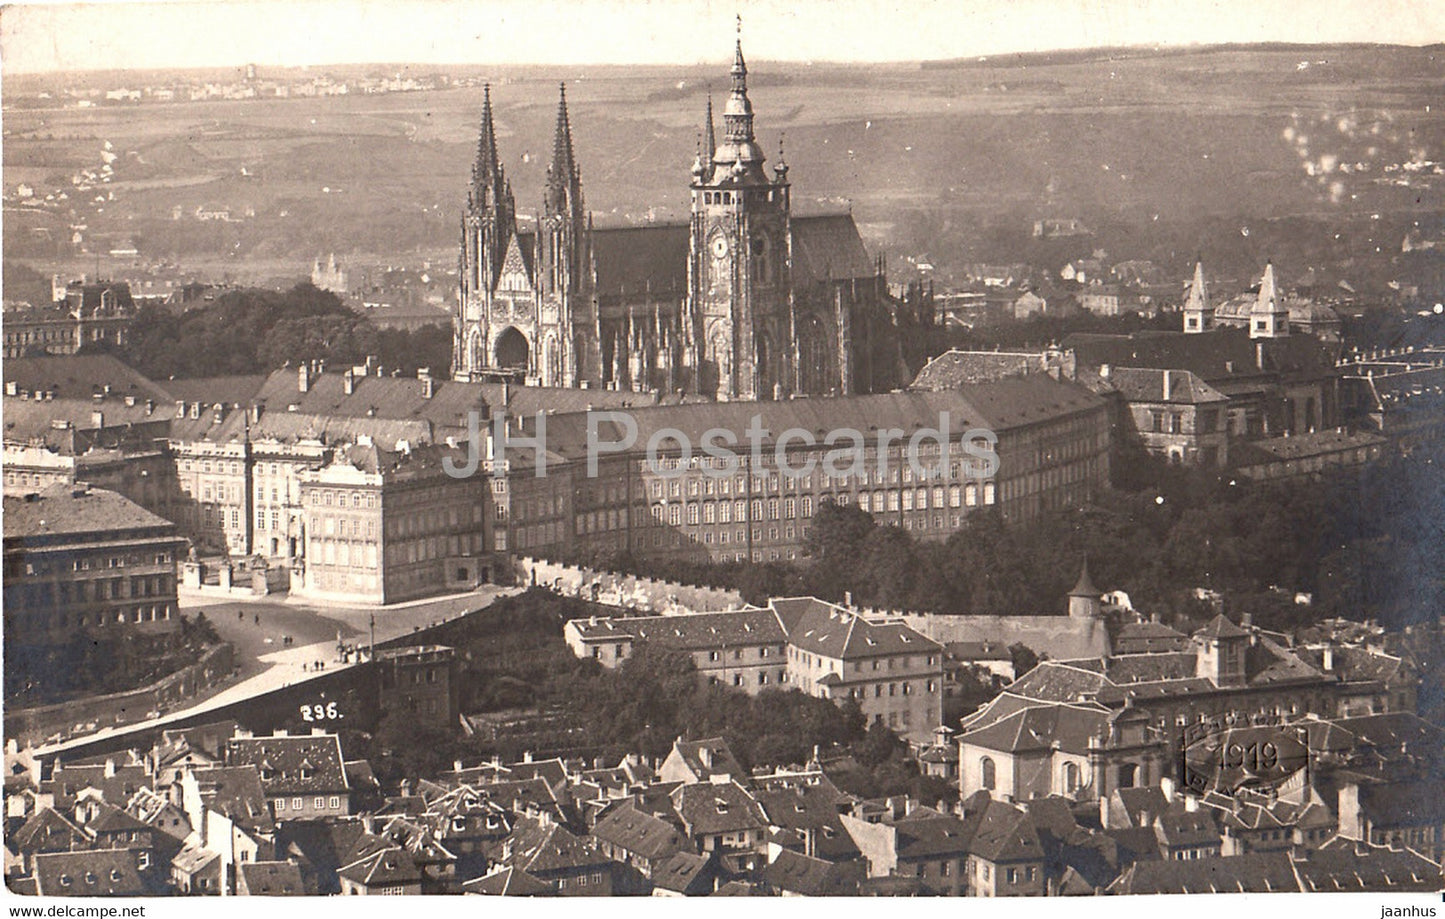 Praha - Prague - Pohled na Hradcany z Rozhledny - 296 - old postcard - Czech Republic - unused - JH Postcards